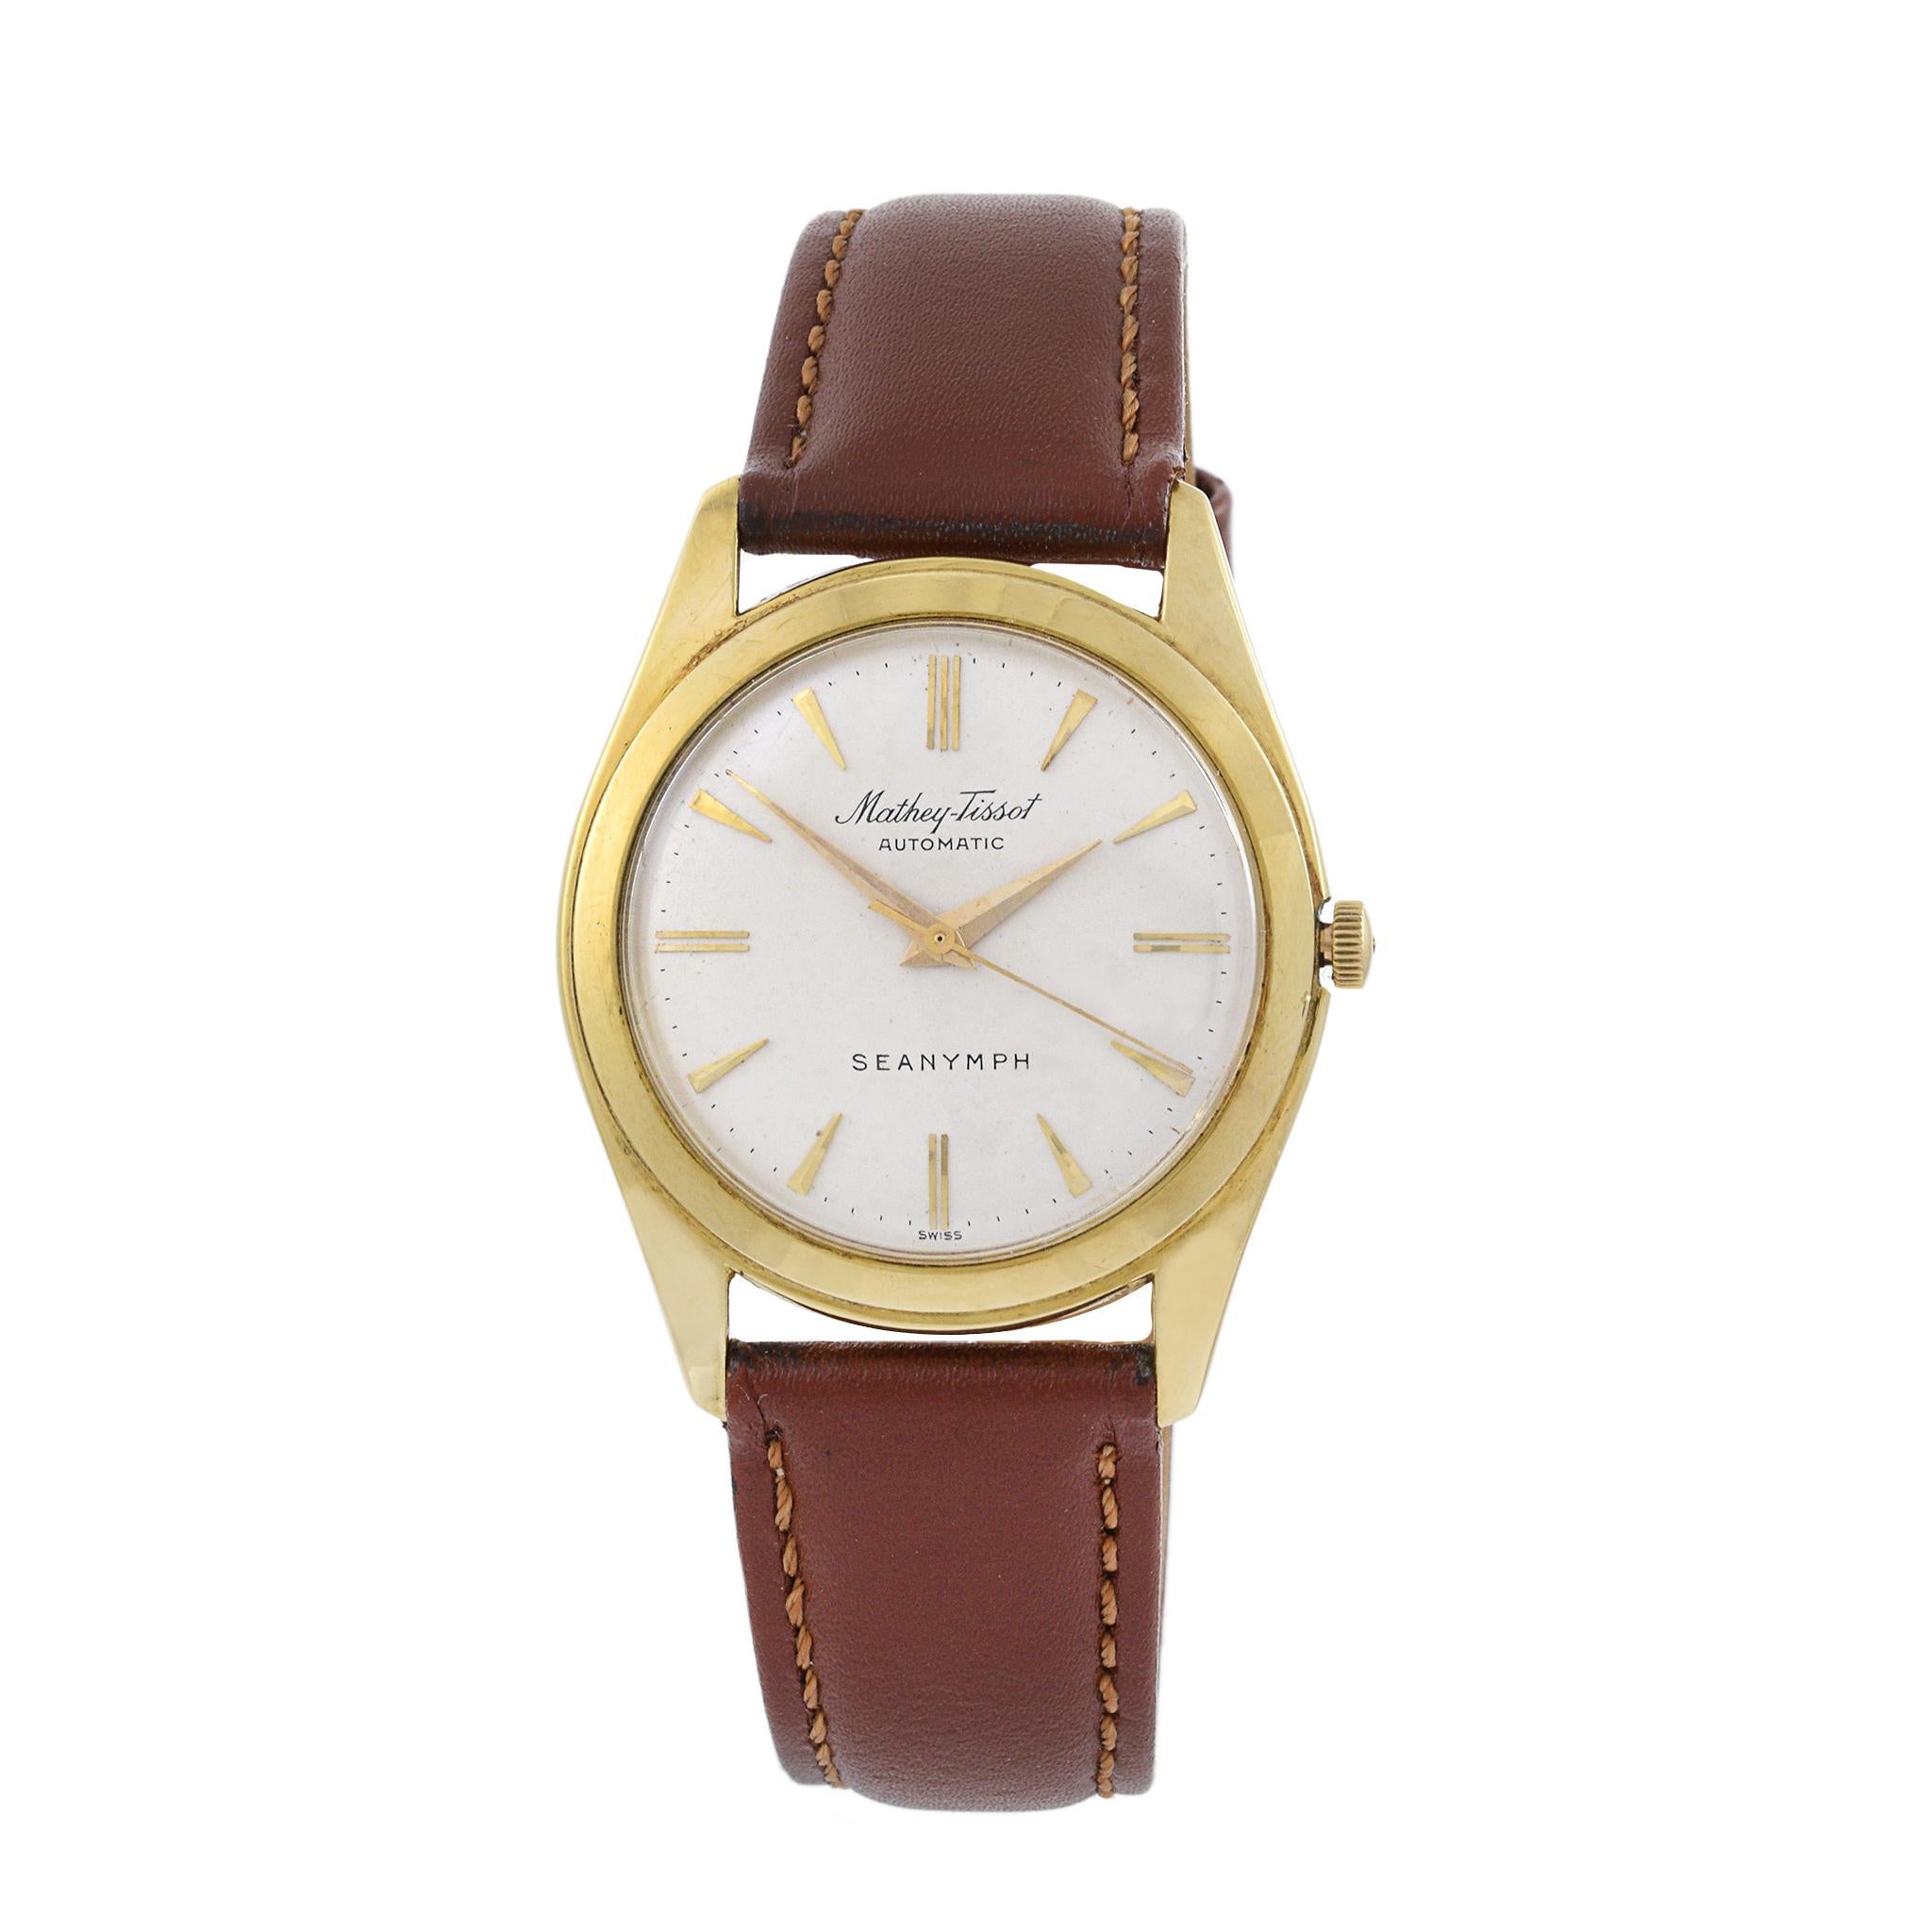 Dies ist ein ausgezeichneter Zustand Mathey Tissot Sea Nymph Form der 1960er Jahre. Das Gehäuse dieser Uhr ist aus 18 Karat Gelbgold. Das Gehäuse hat einen Durchmesser von 34 mm.

Das Zifferblatt ist original und das Gehäuse ist